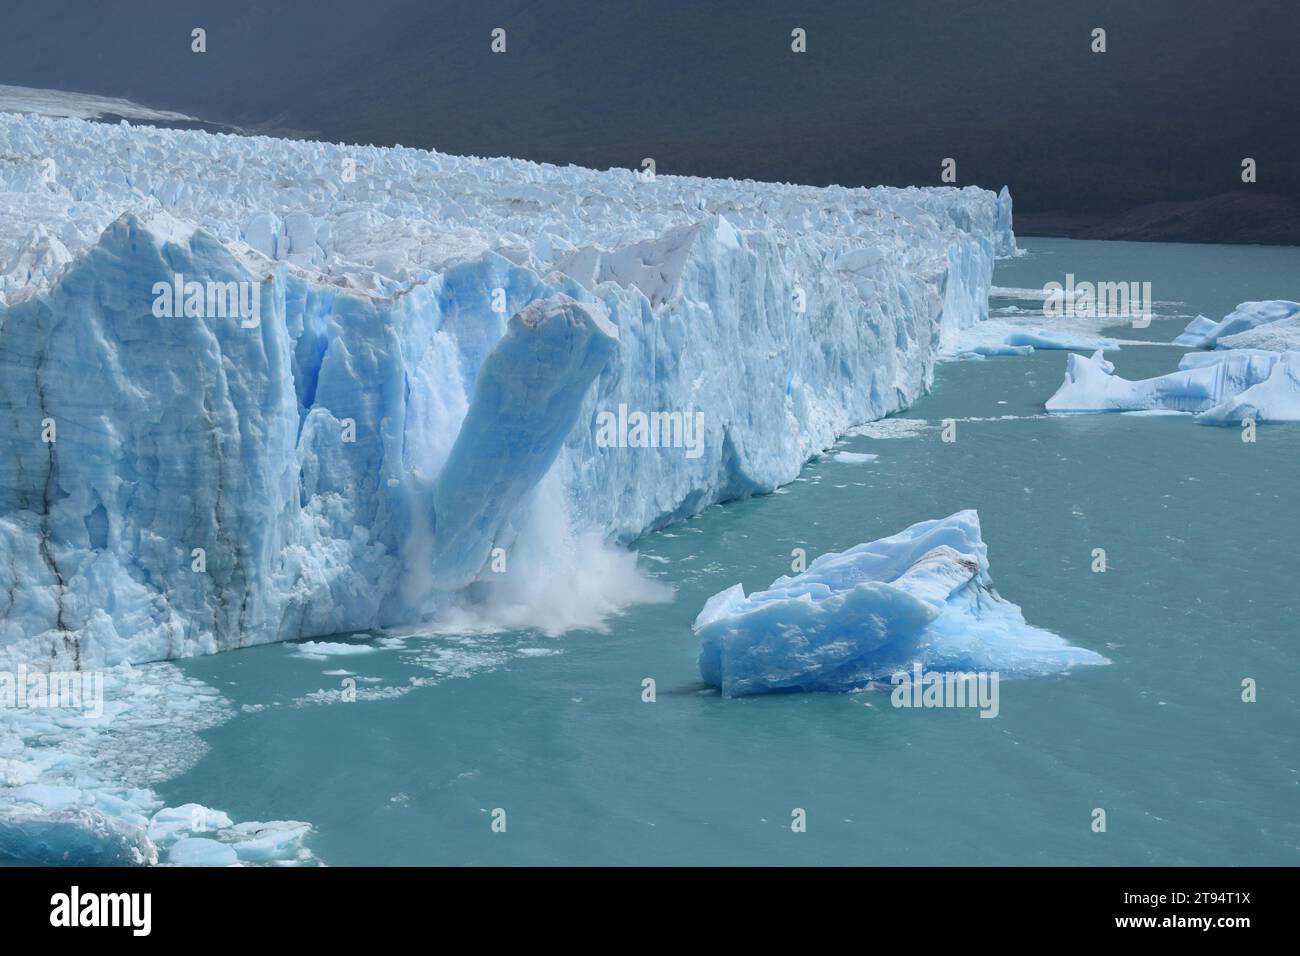 La colonna di ghiaccio crolla al ghiacciaio Perito Moreno in Patagonia argentina. Foto Stock